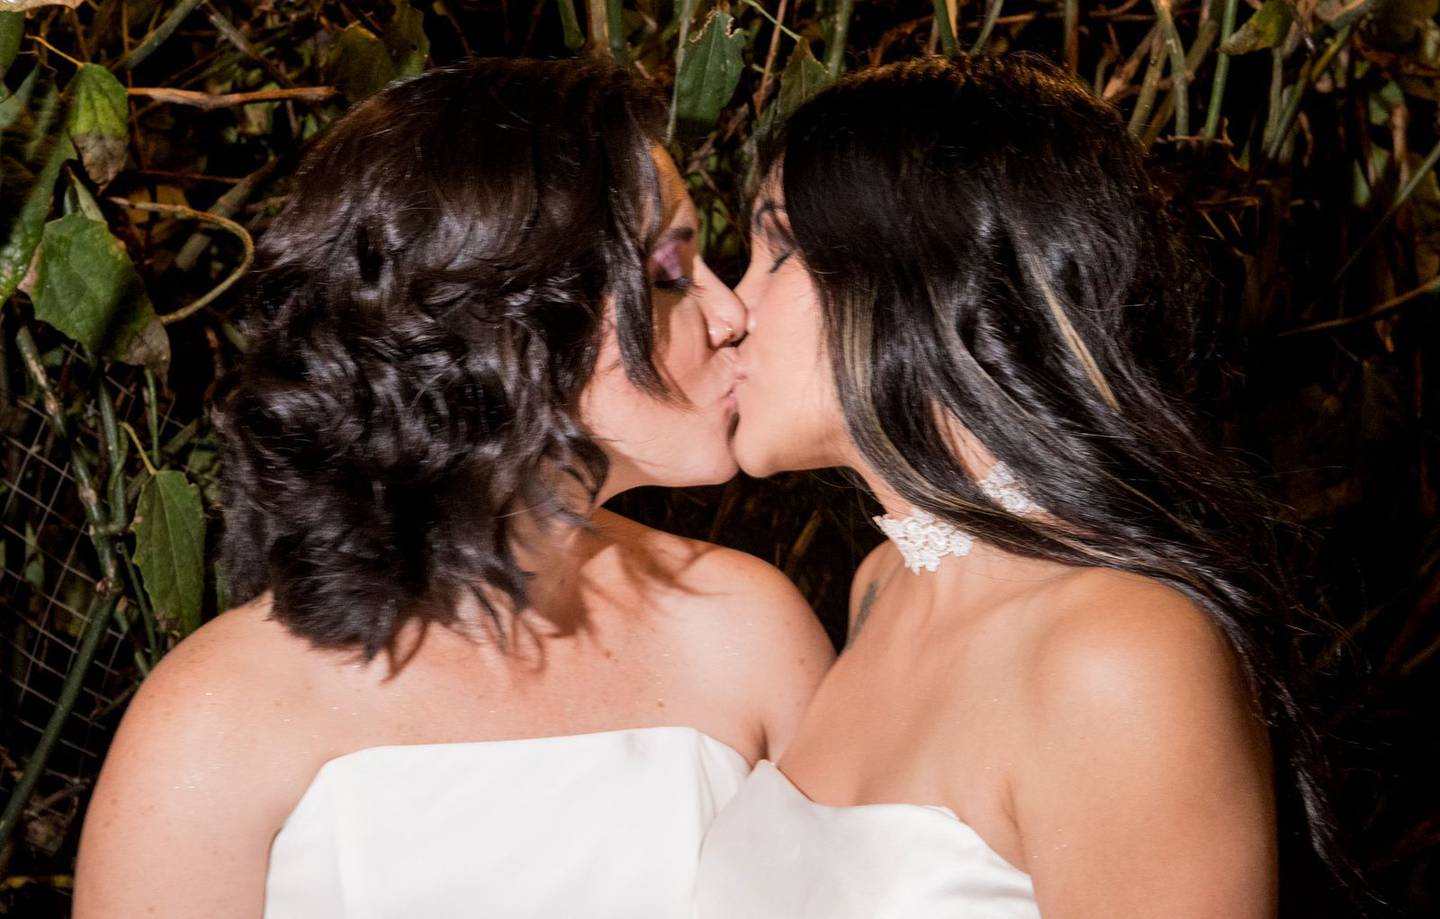 Daritza Araya Arguedas, de 24 años de edad y técnica judicial, se casó con Alexandra Quirós Castillo, una estudiante de 29 años, este 26 de mayo, a las 0 horas con 10 minutos, convirtiéndose así en la primera pareja del mismo sexo que se casa civilmente en Costa Rica.